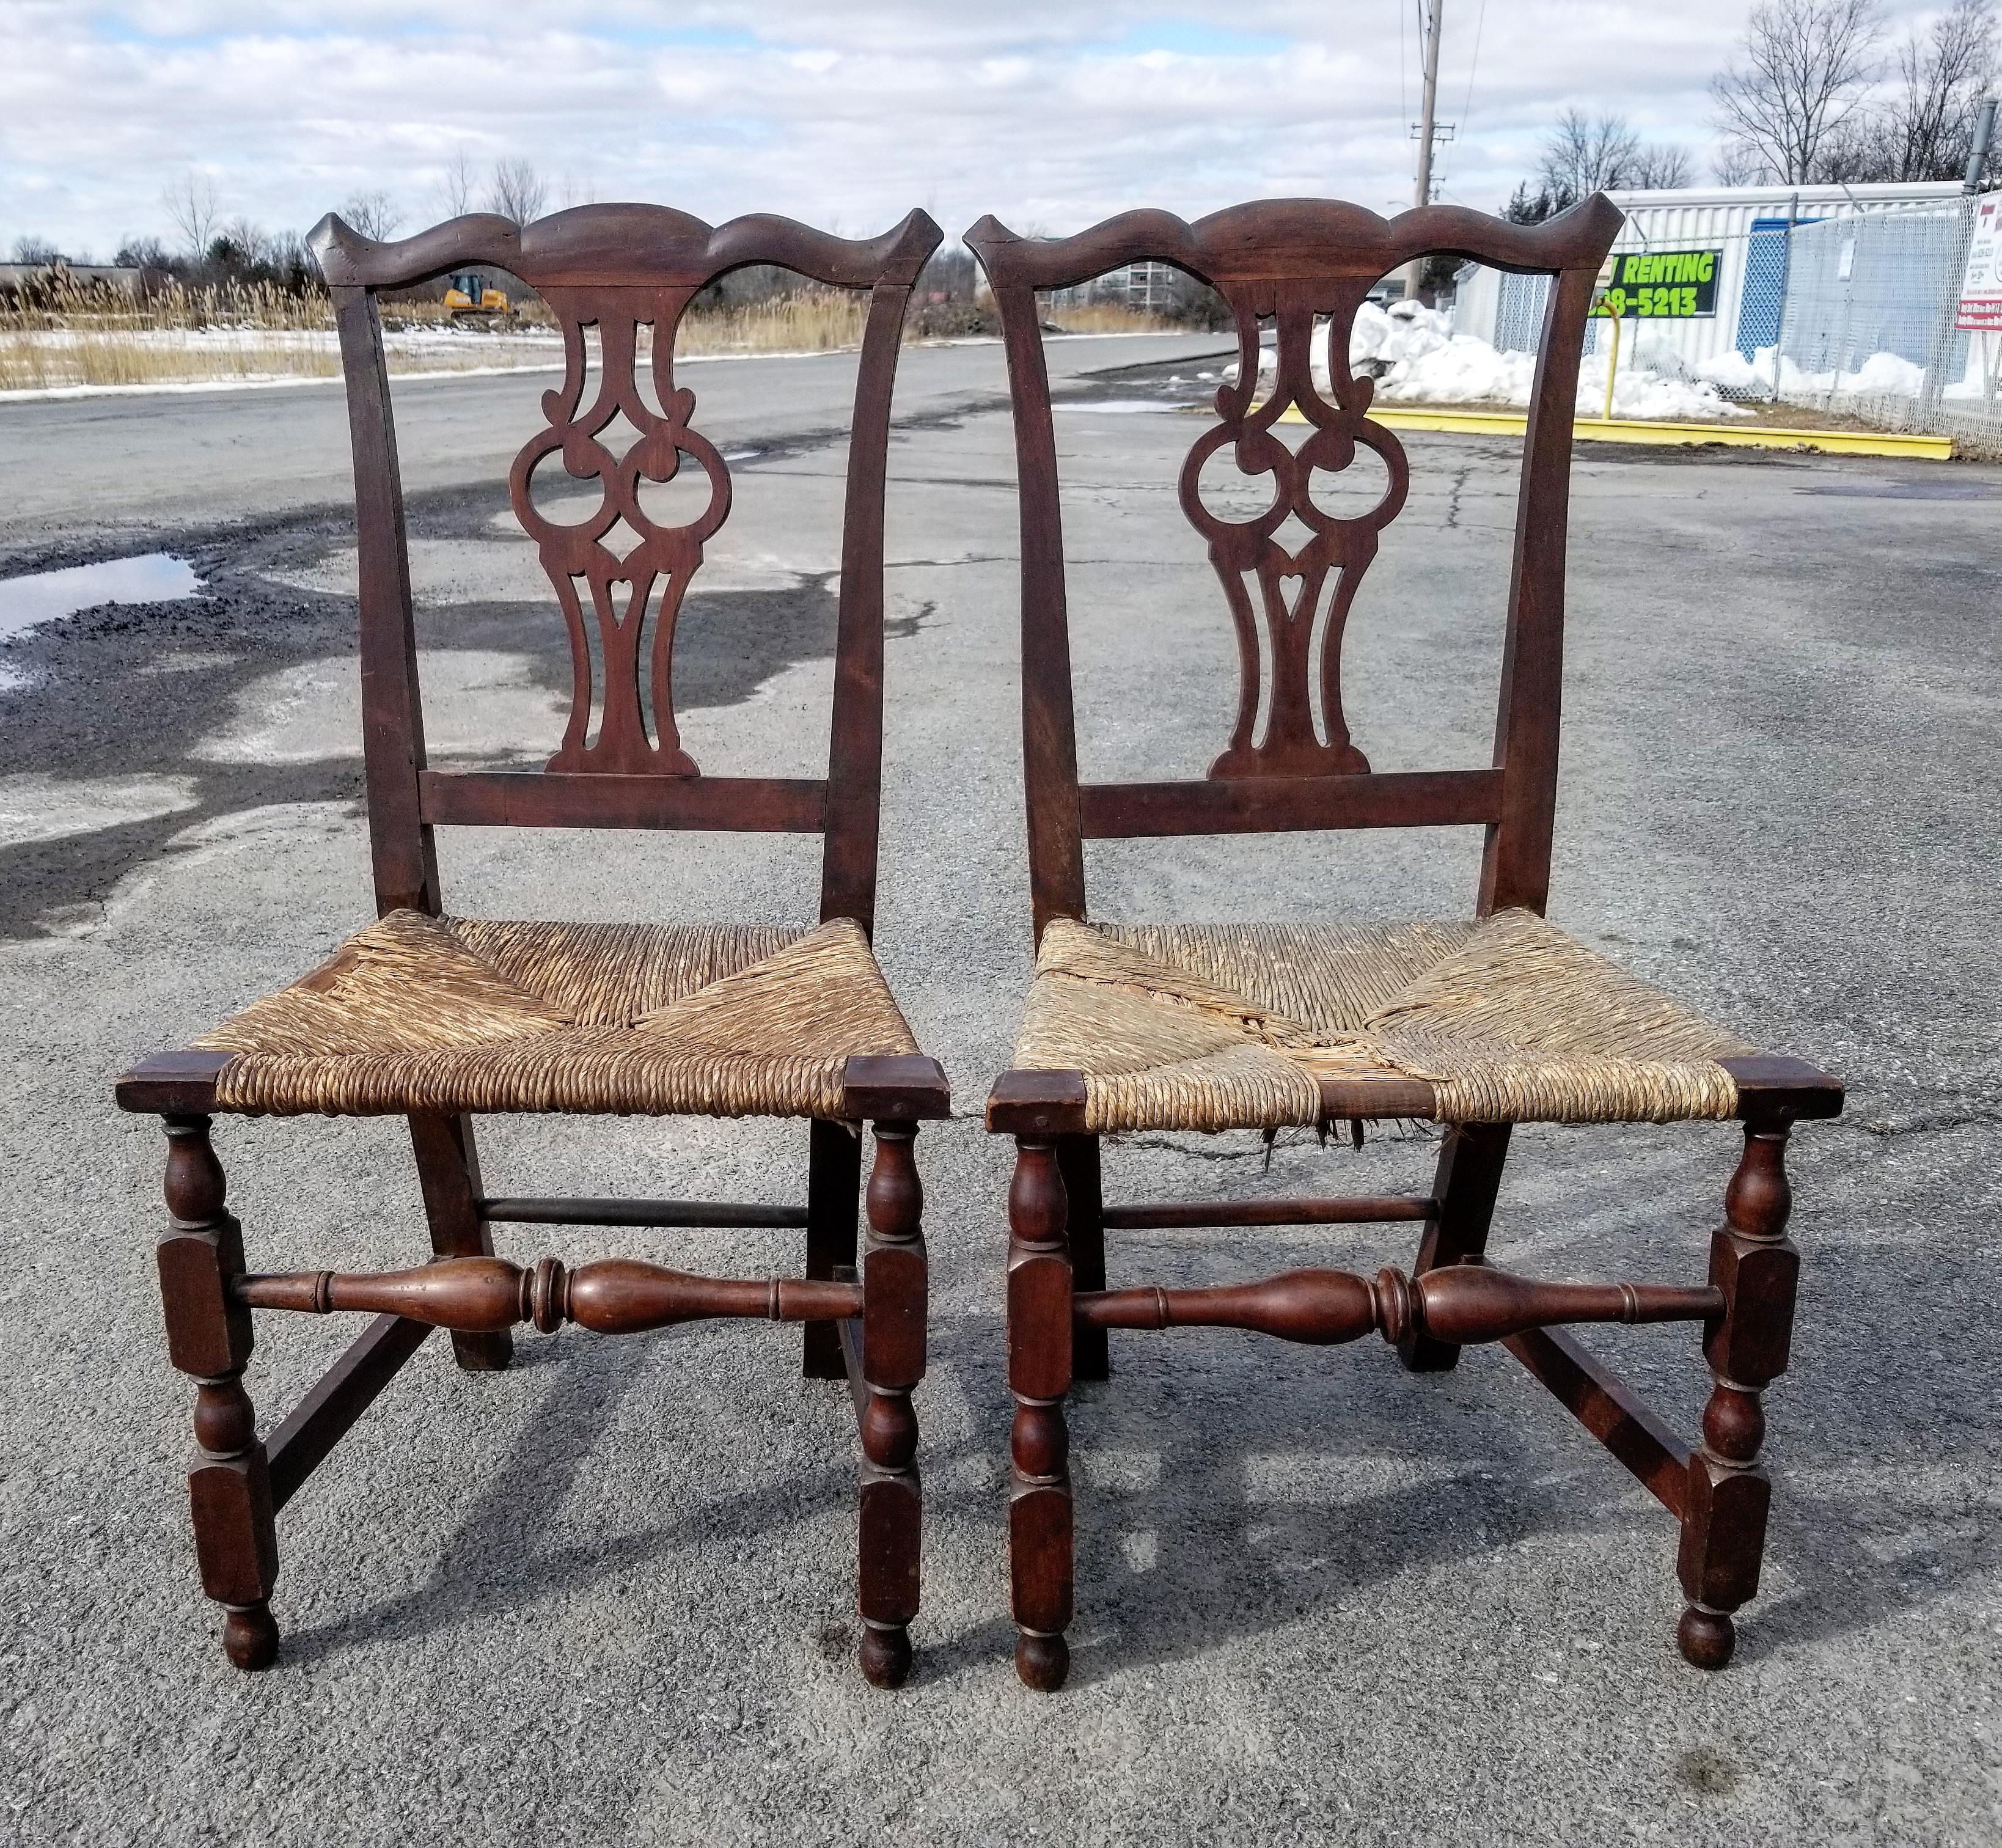 Schönes Paar amerikanischer Chippendale Beistellstühle in mit originaler Oberfläche und Binsen Sitze. Wahrscheinlich aus Salem Massachusetts stammend, weisen diese Stühle straffe, schlangenförmige Kämme mit nach oben gebogenen Ohren über